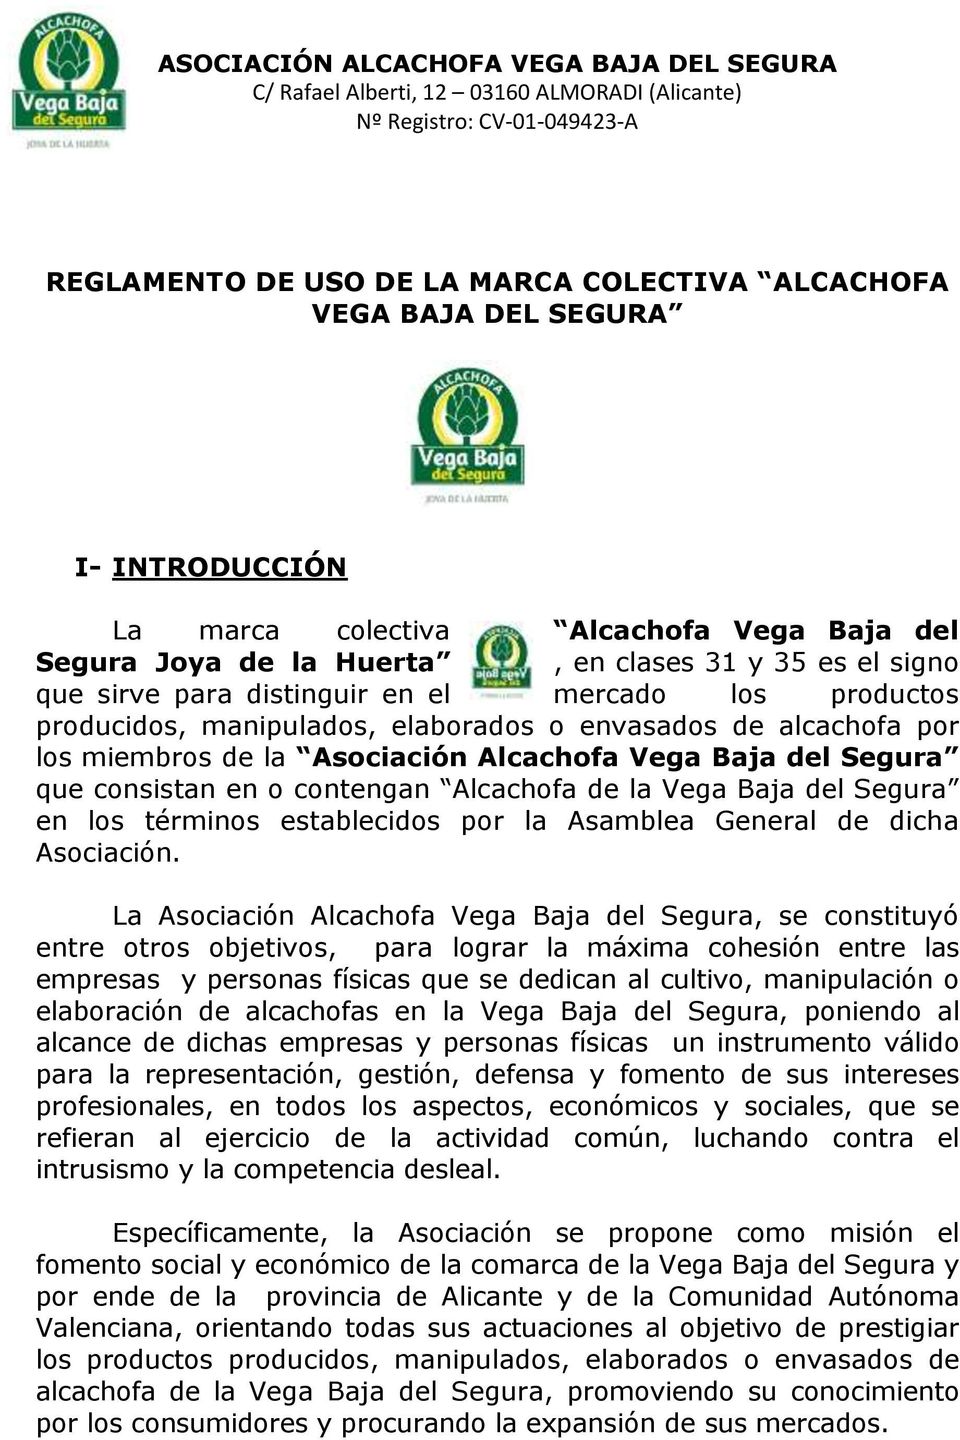 Alcachofa de la Vega Baja del Segura en los términos establecidos por la Asamblea General de dicha Asociación.